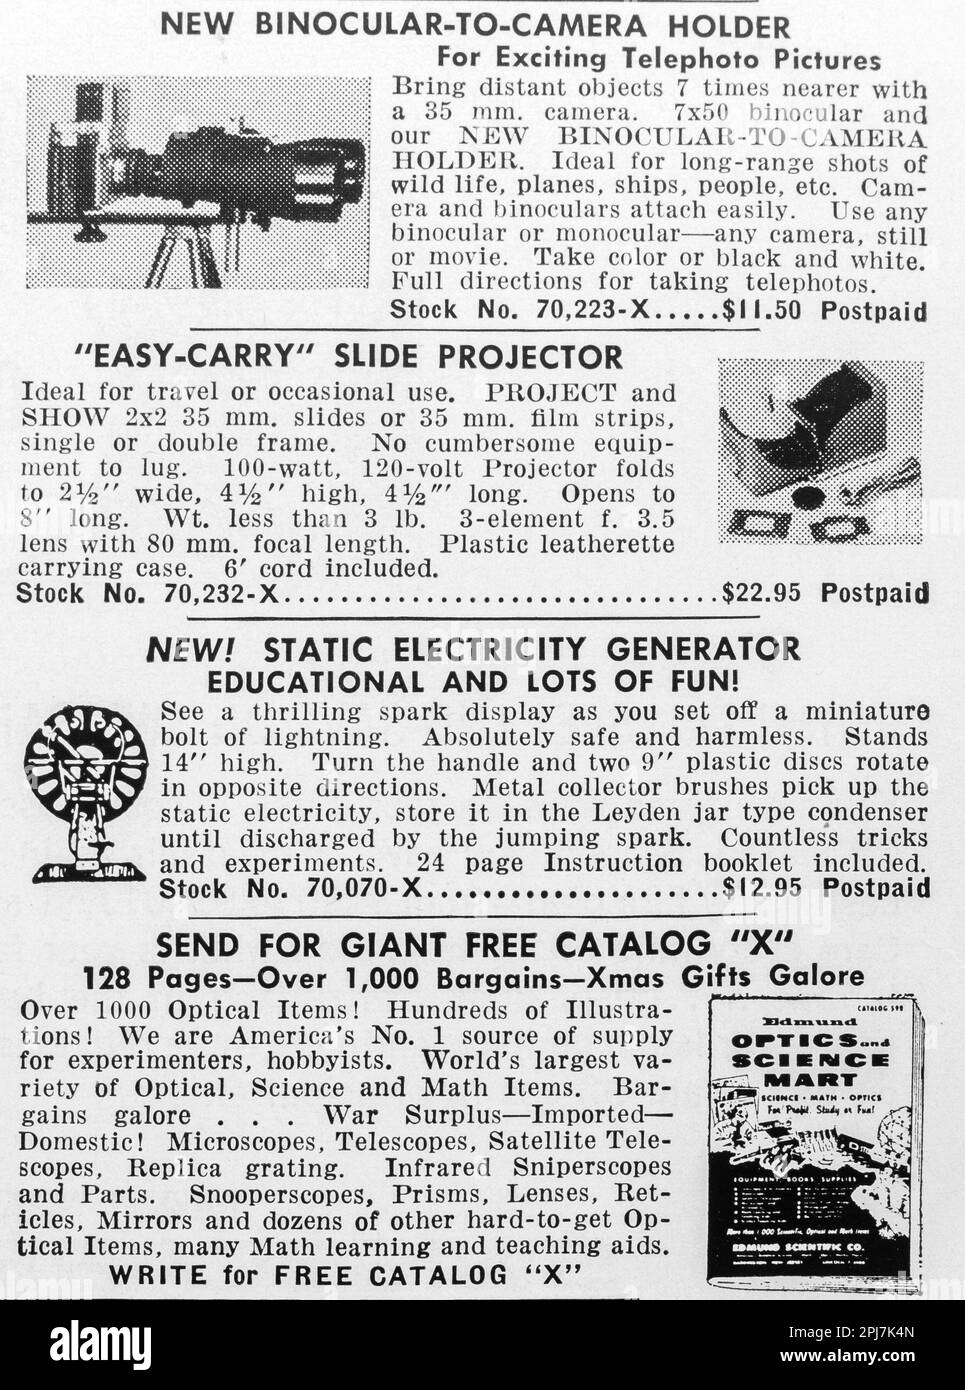 Optikzubehör, binokulare Halterung, Dia-Projektor-Anzeige in einer Zeitschrift NatGeo, Dezember 1959 Stockfoto